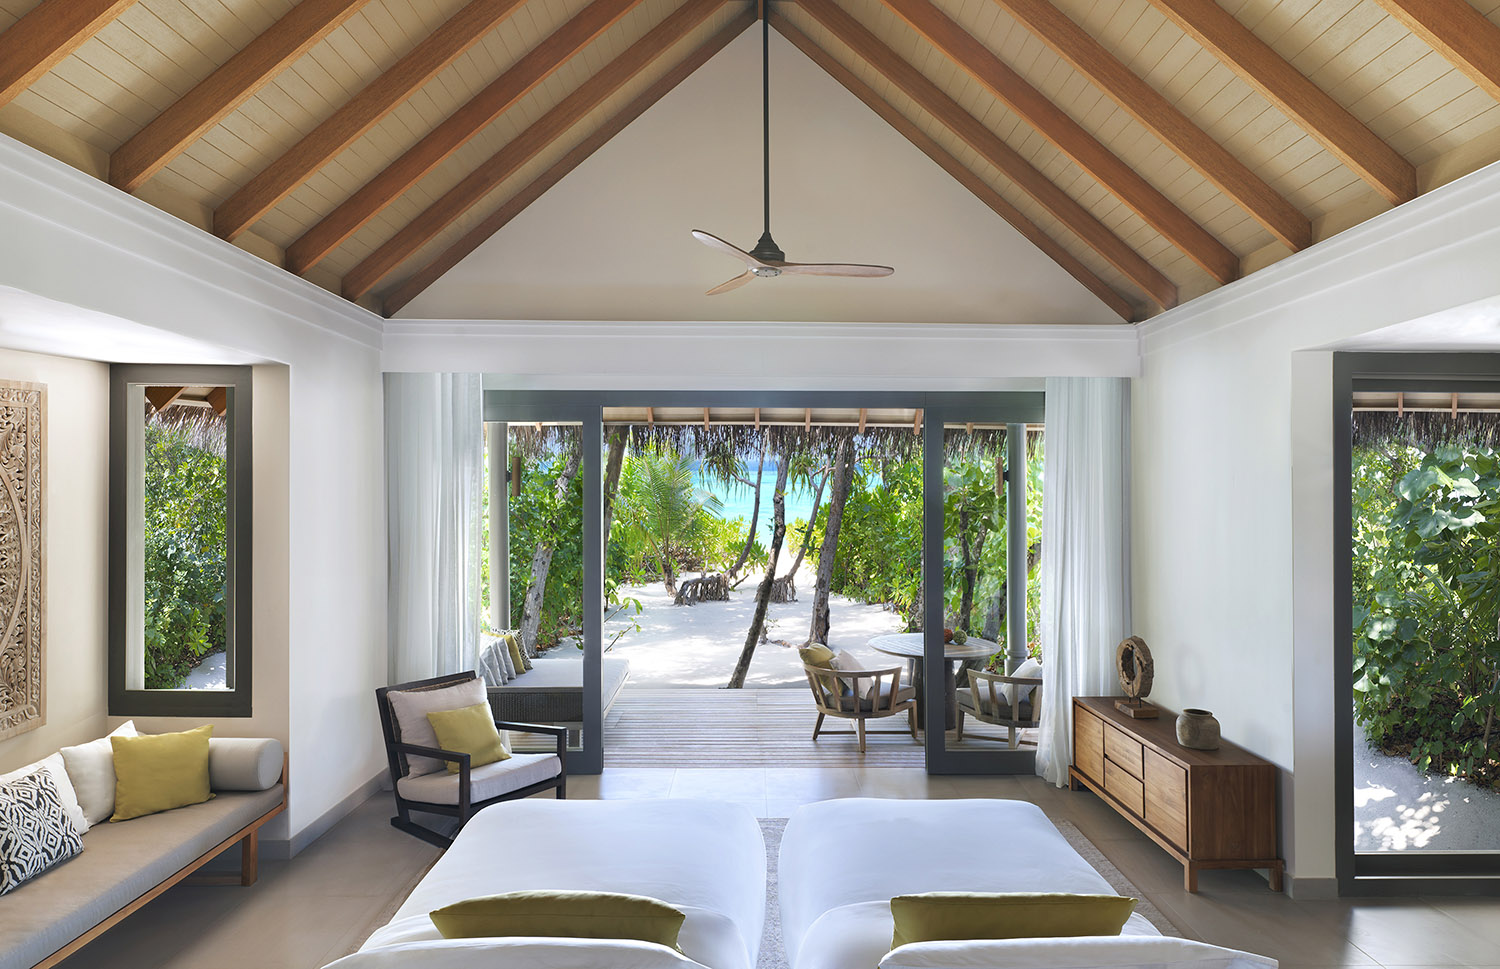 2 Bedroom Villas Мальдивы